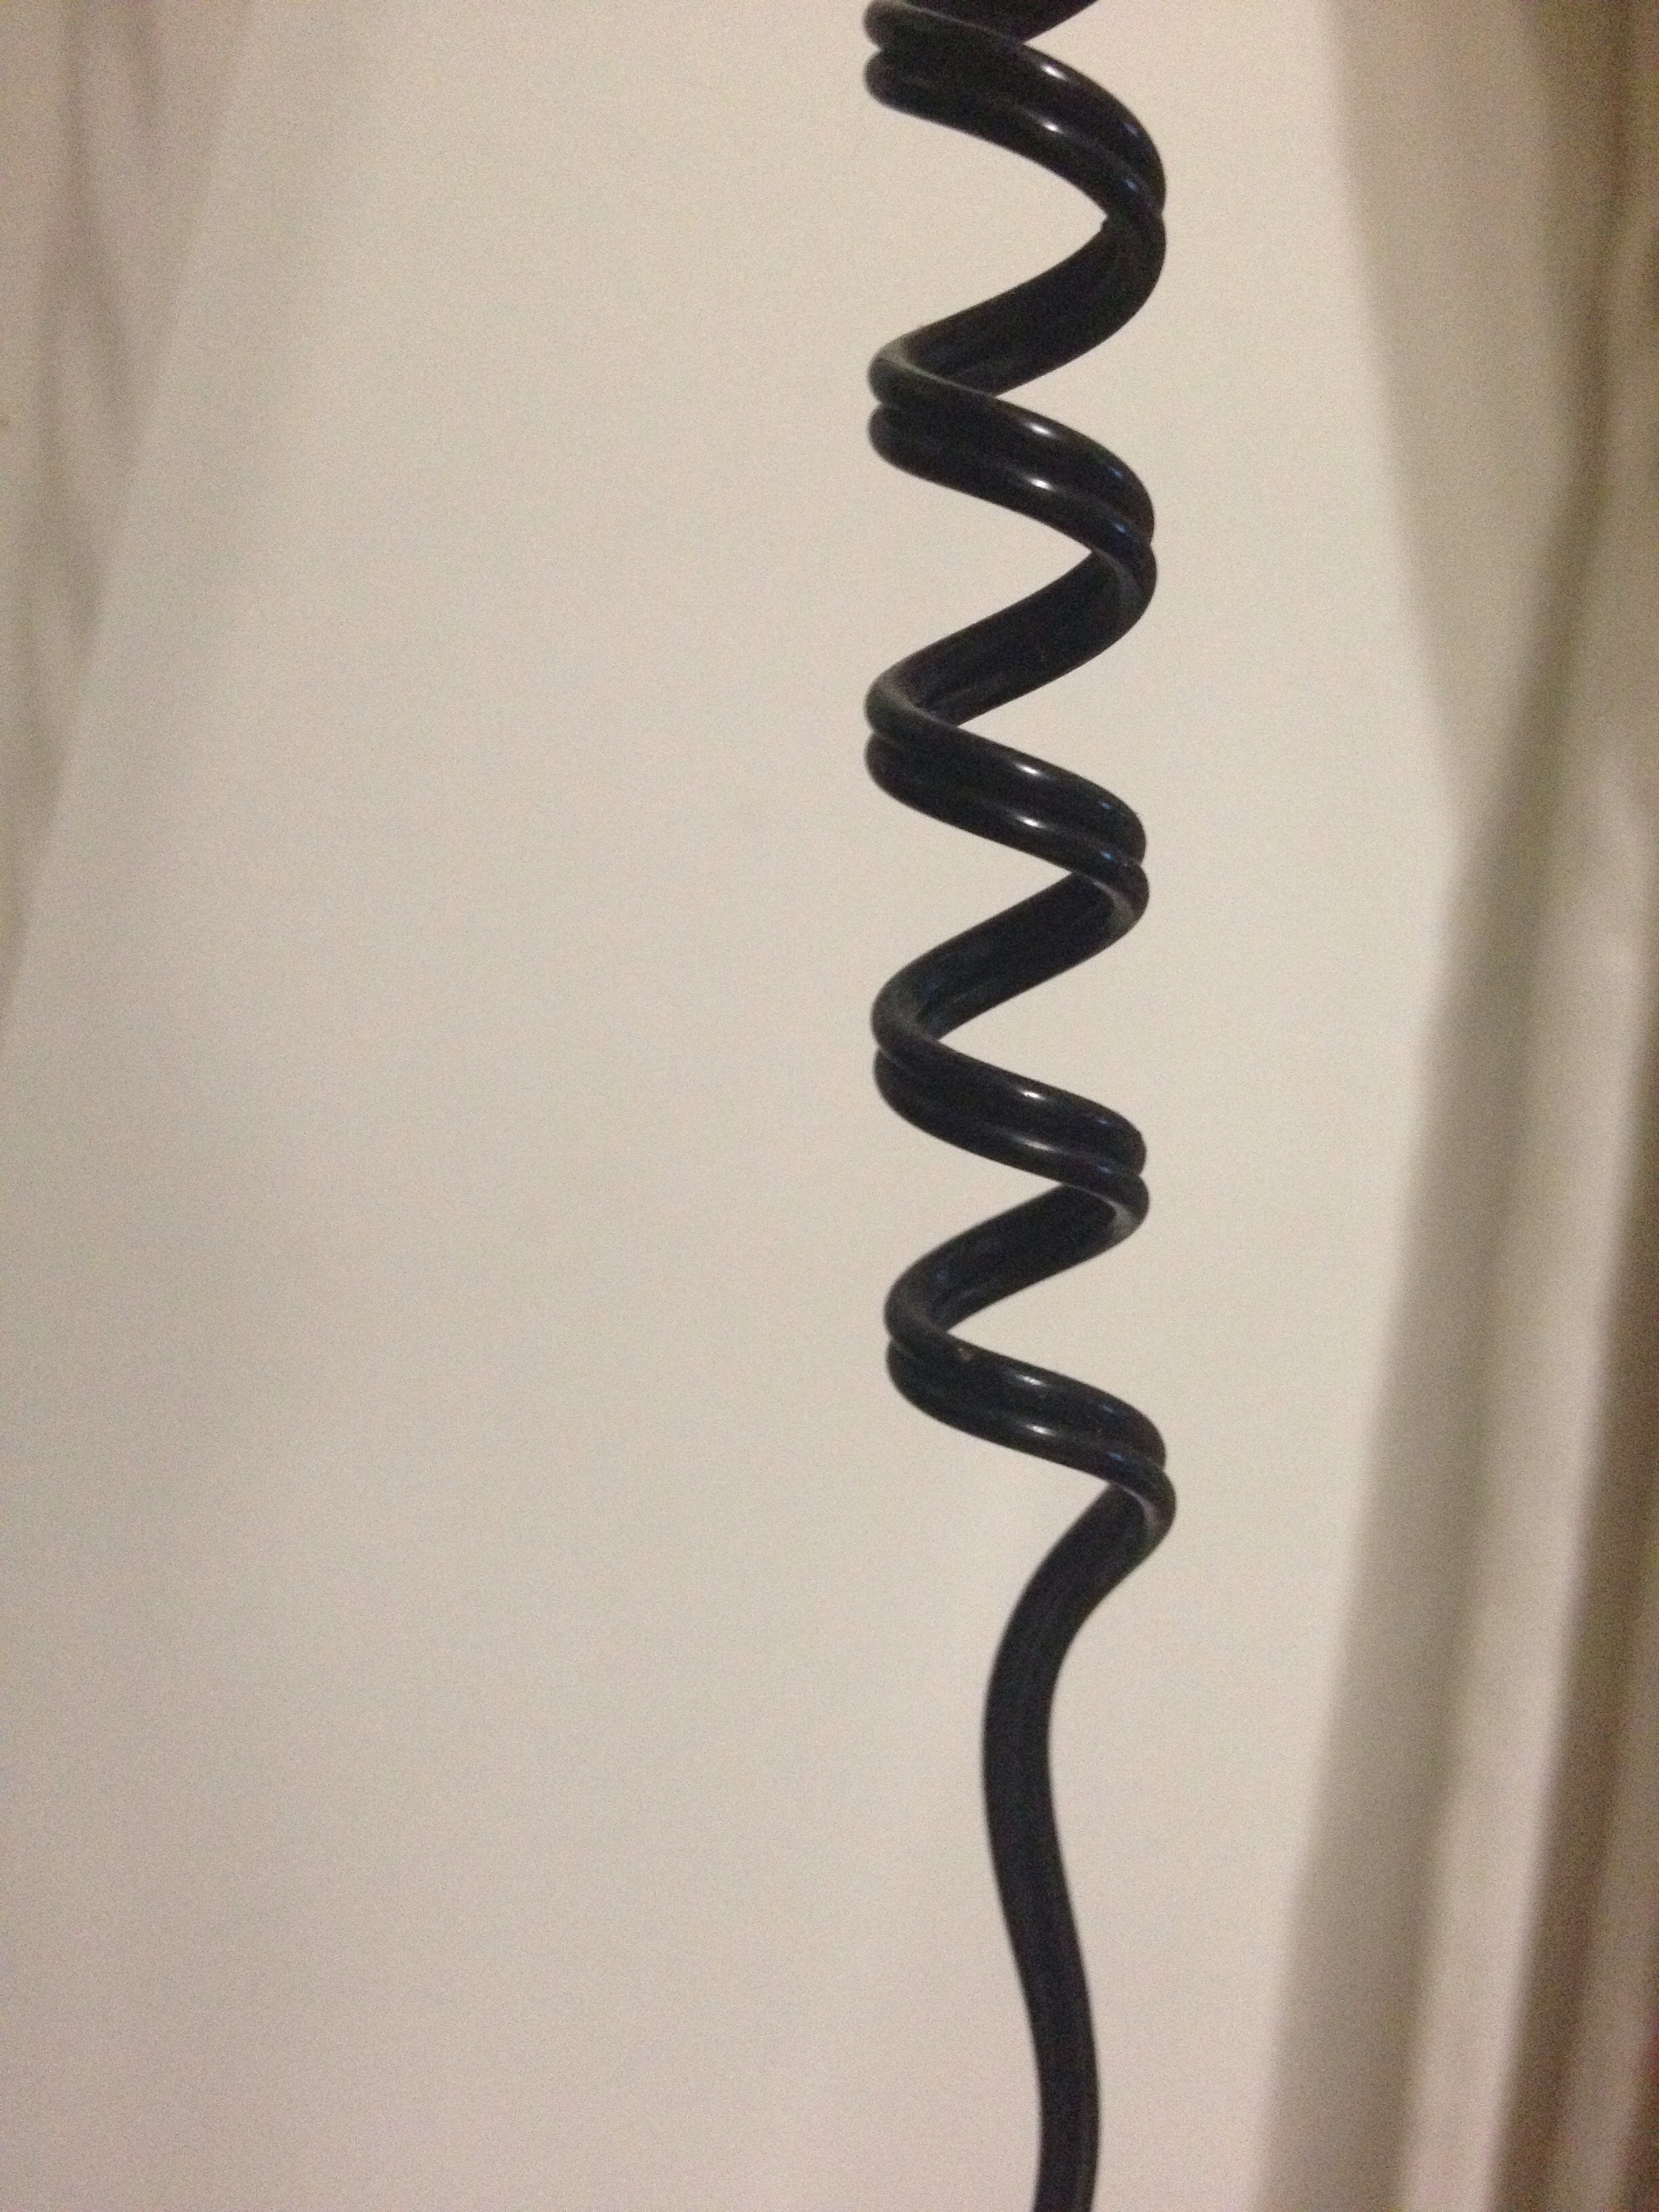 Espiral cable